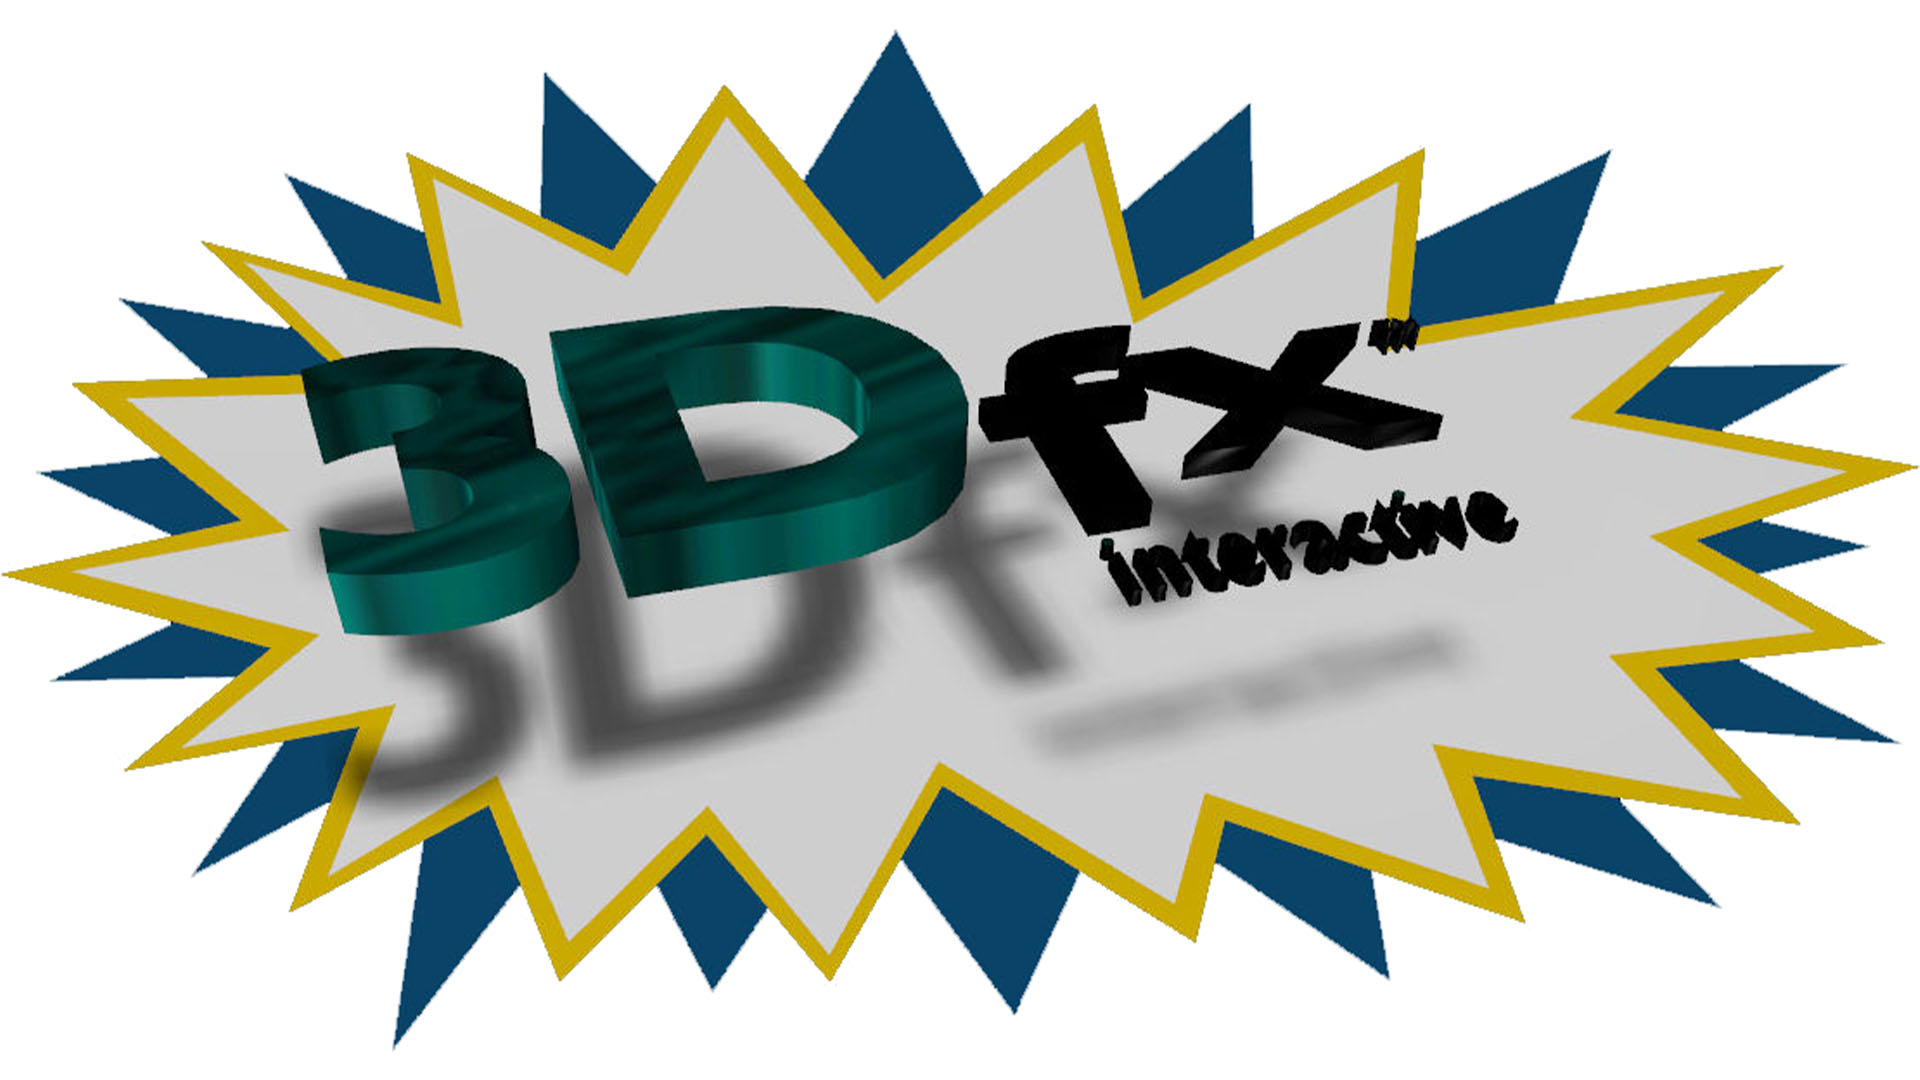 3dfx Logo